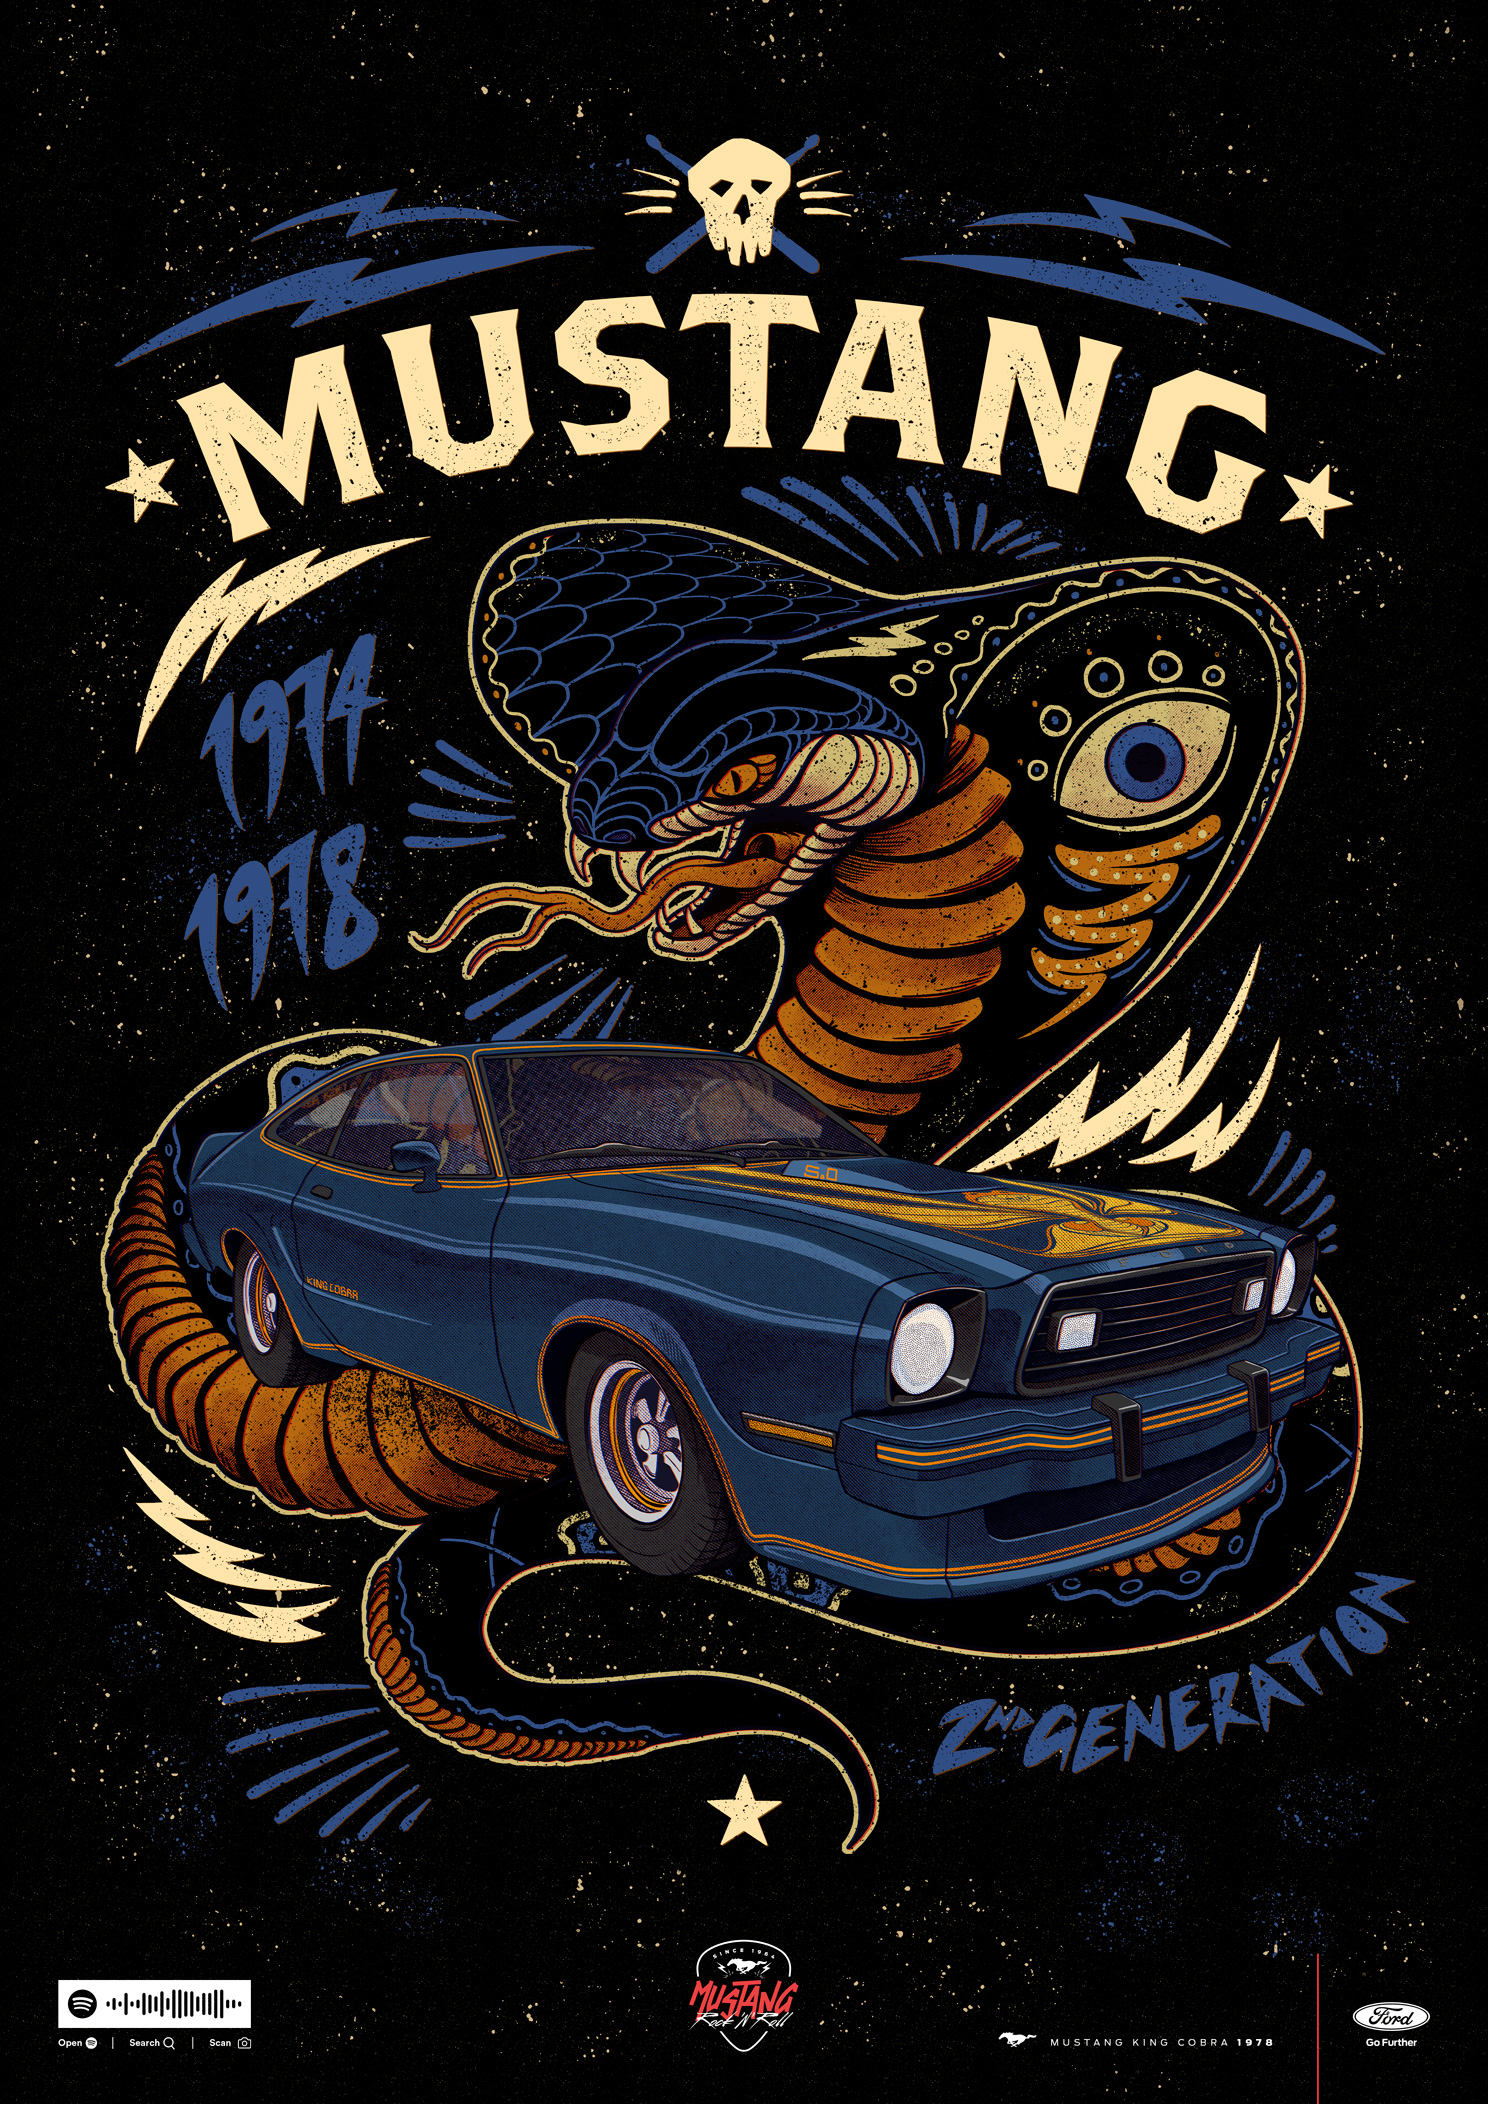 Mustang_Poster_2Generation_EN.jpg